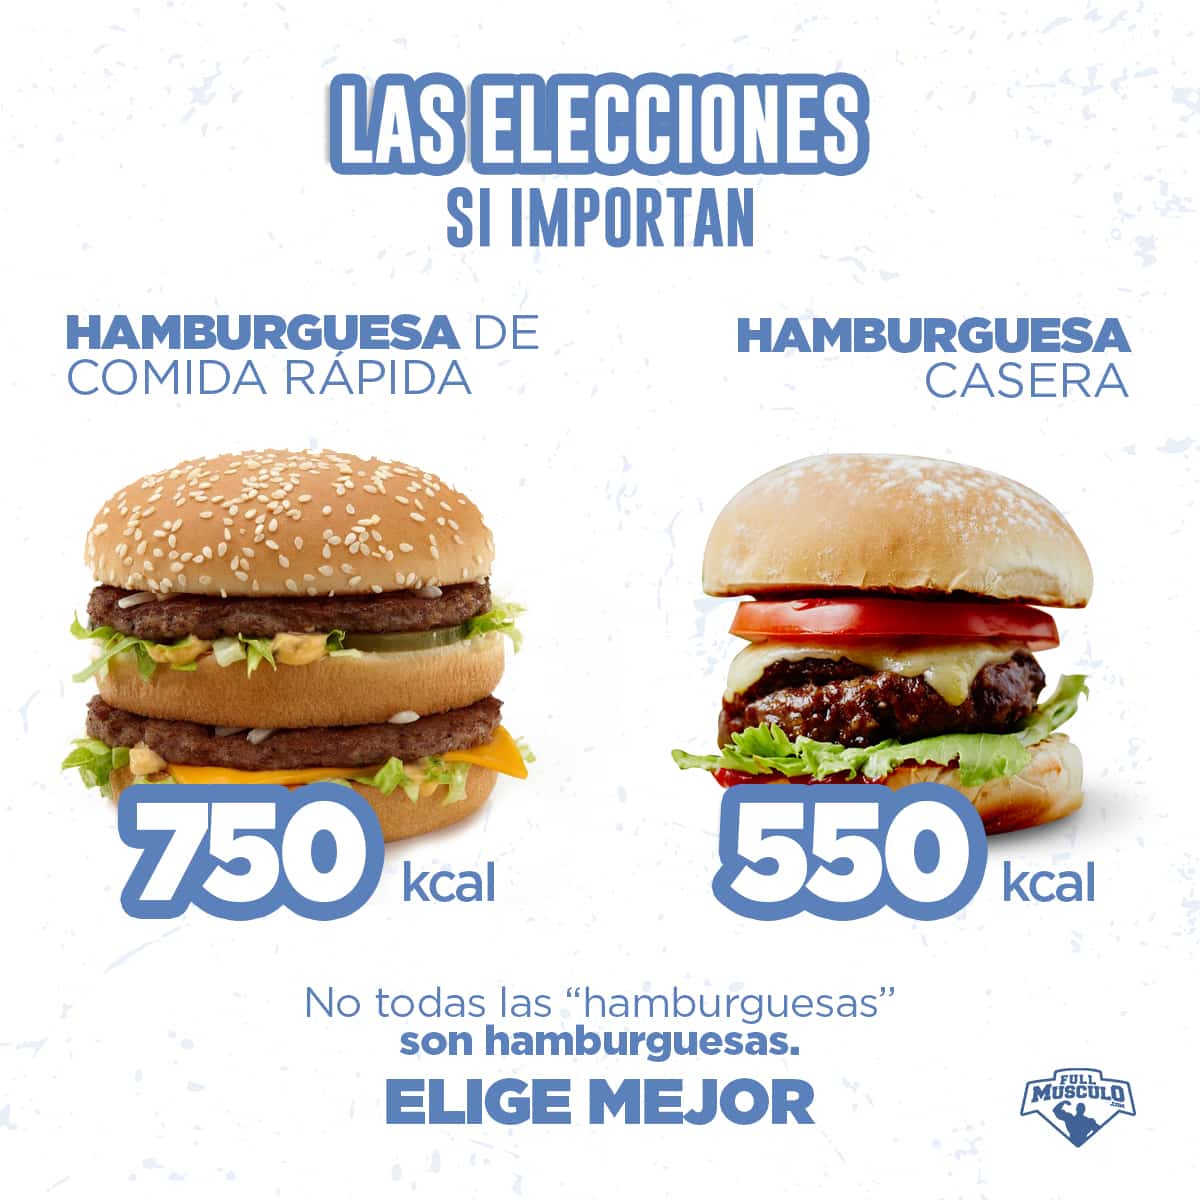 hamburguesas de comida rapida vs casera